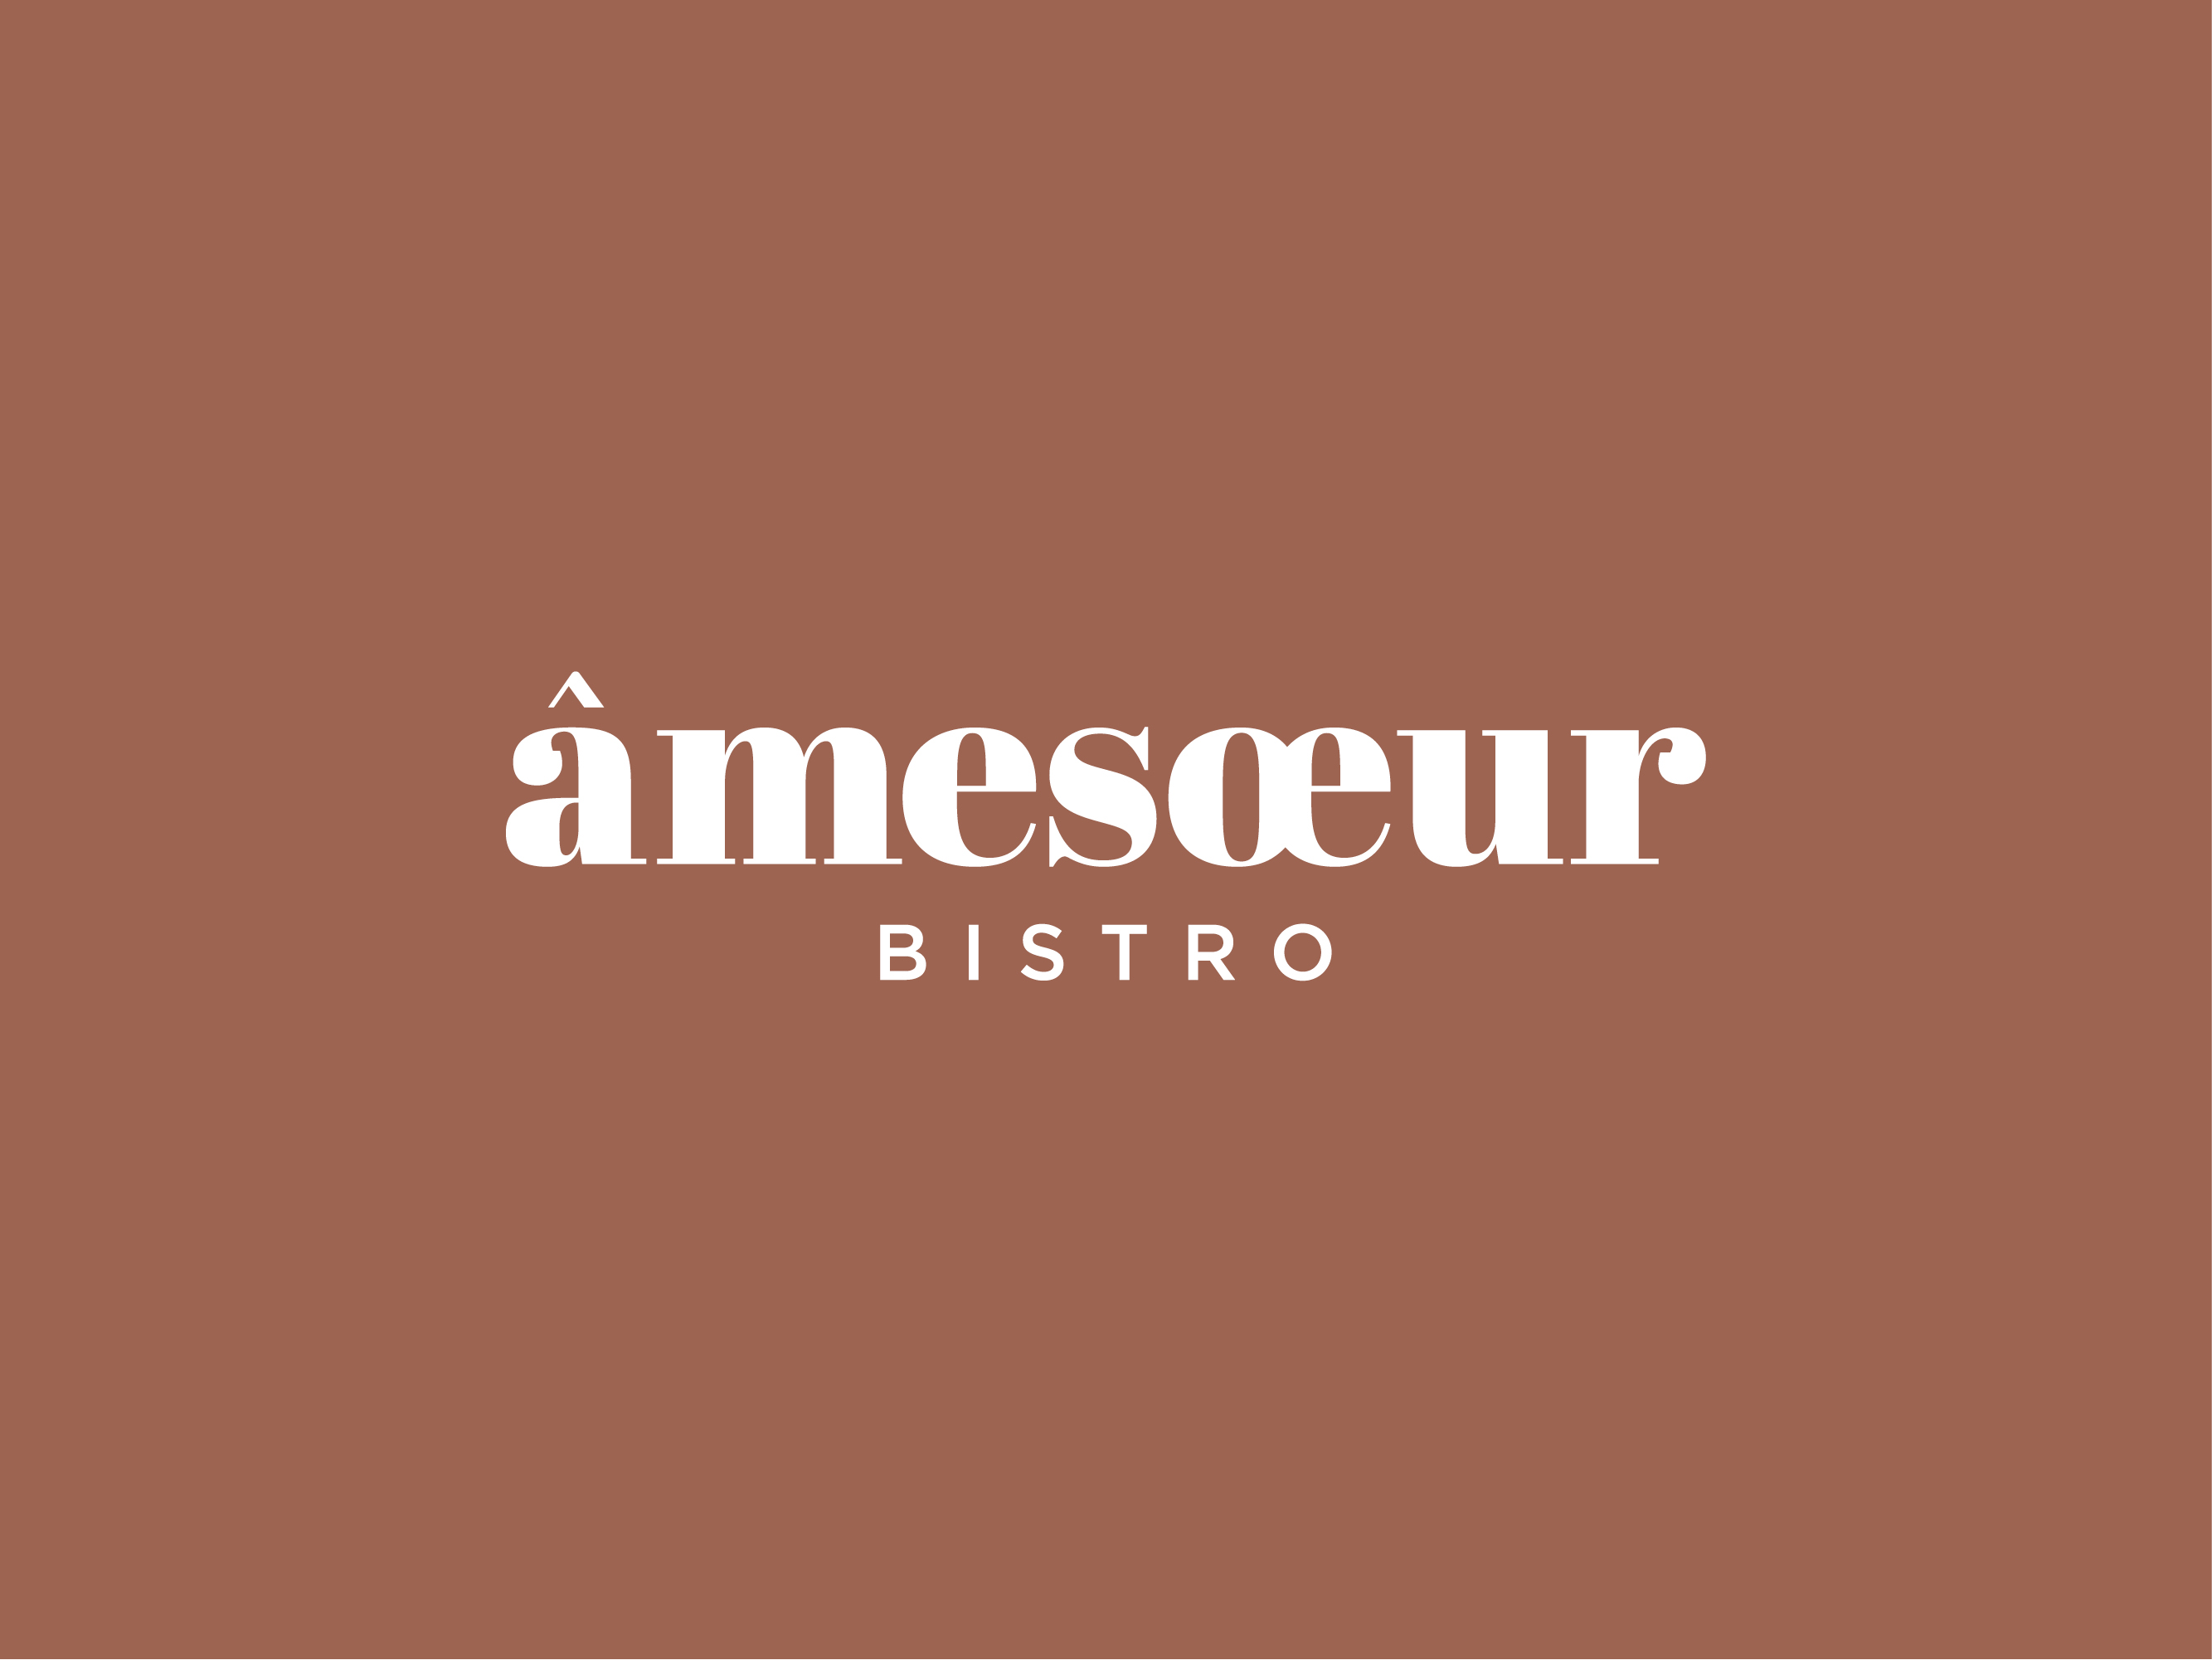 Amesoeur bistro logo design